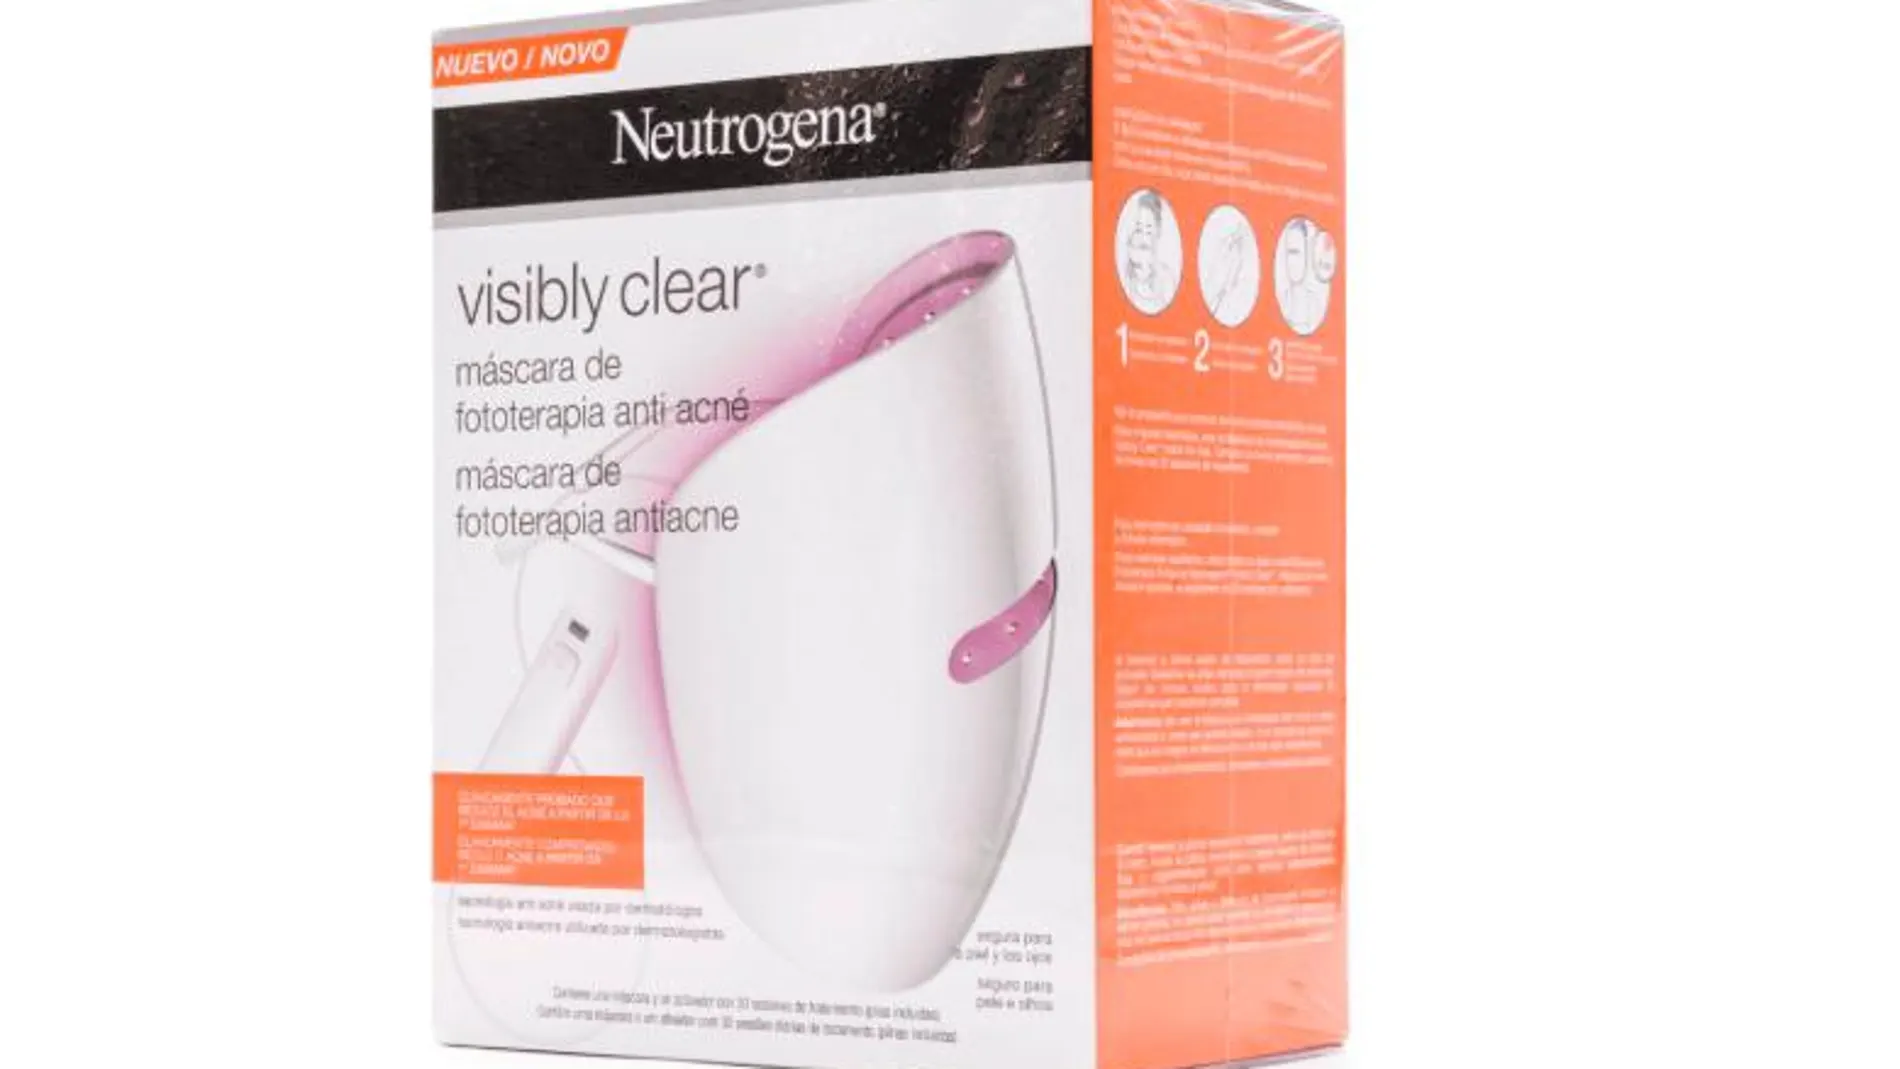 Retiran del mercado un producto de Neutrógena por riesgo de daño ocular